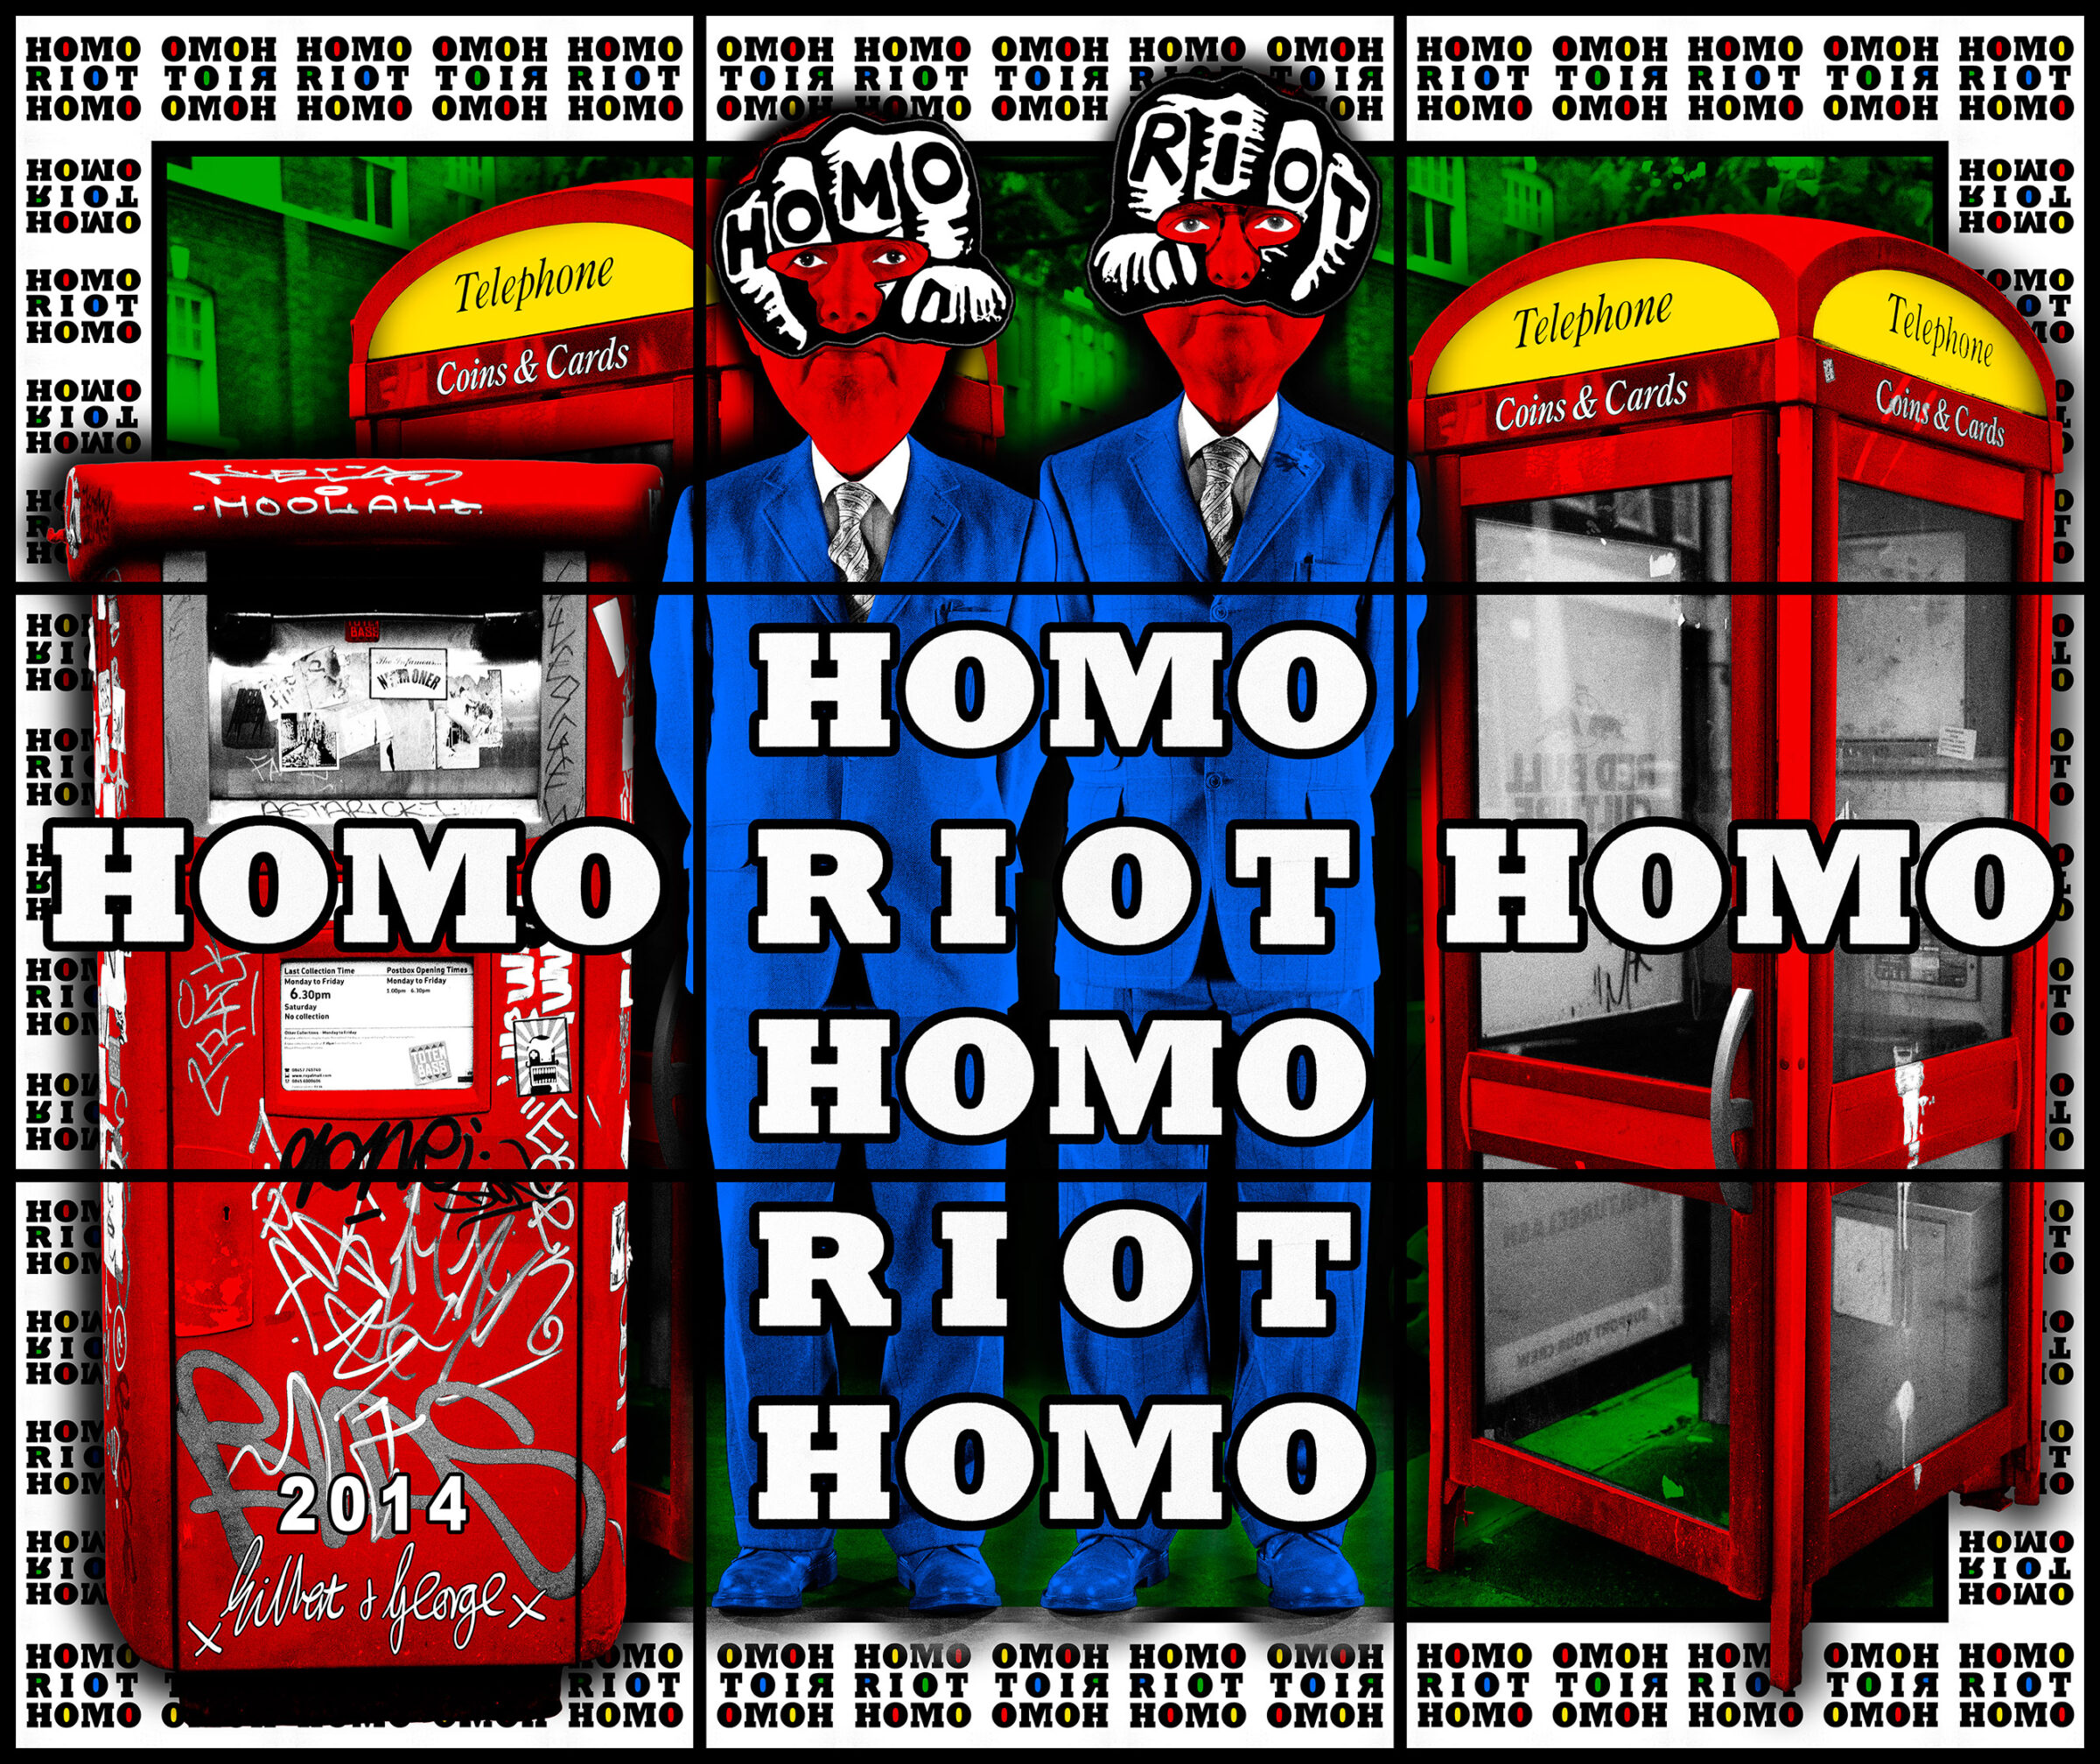 2014 HOMO RIOT HOMO